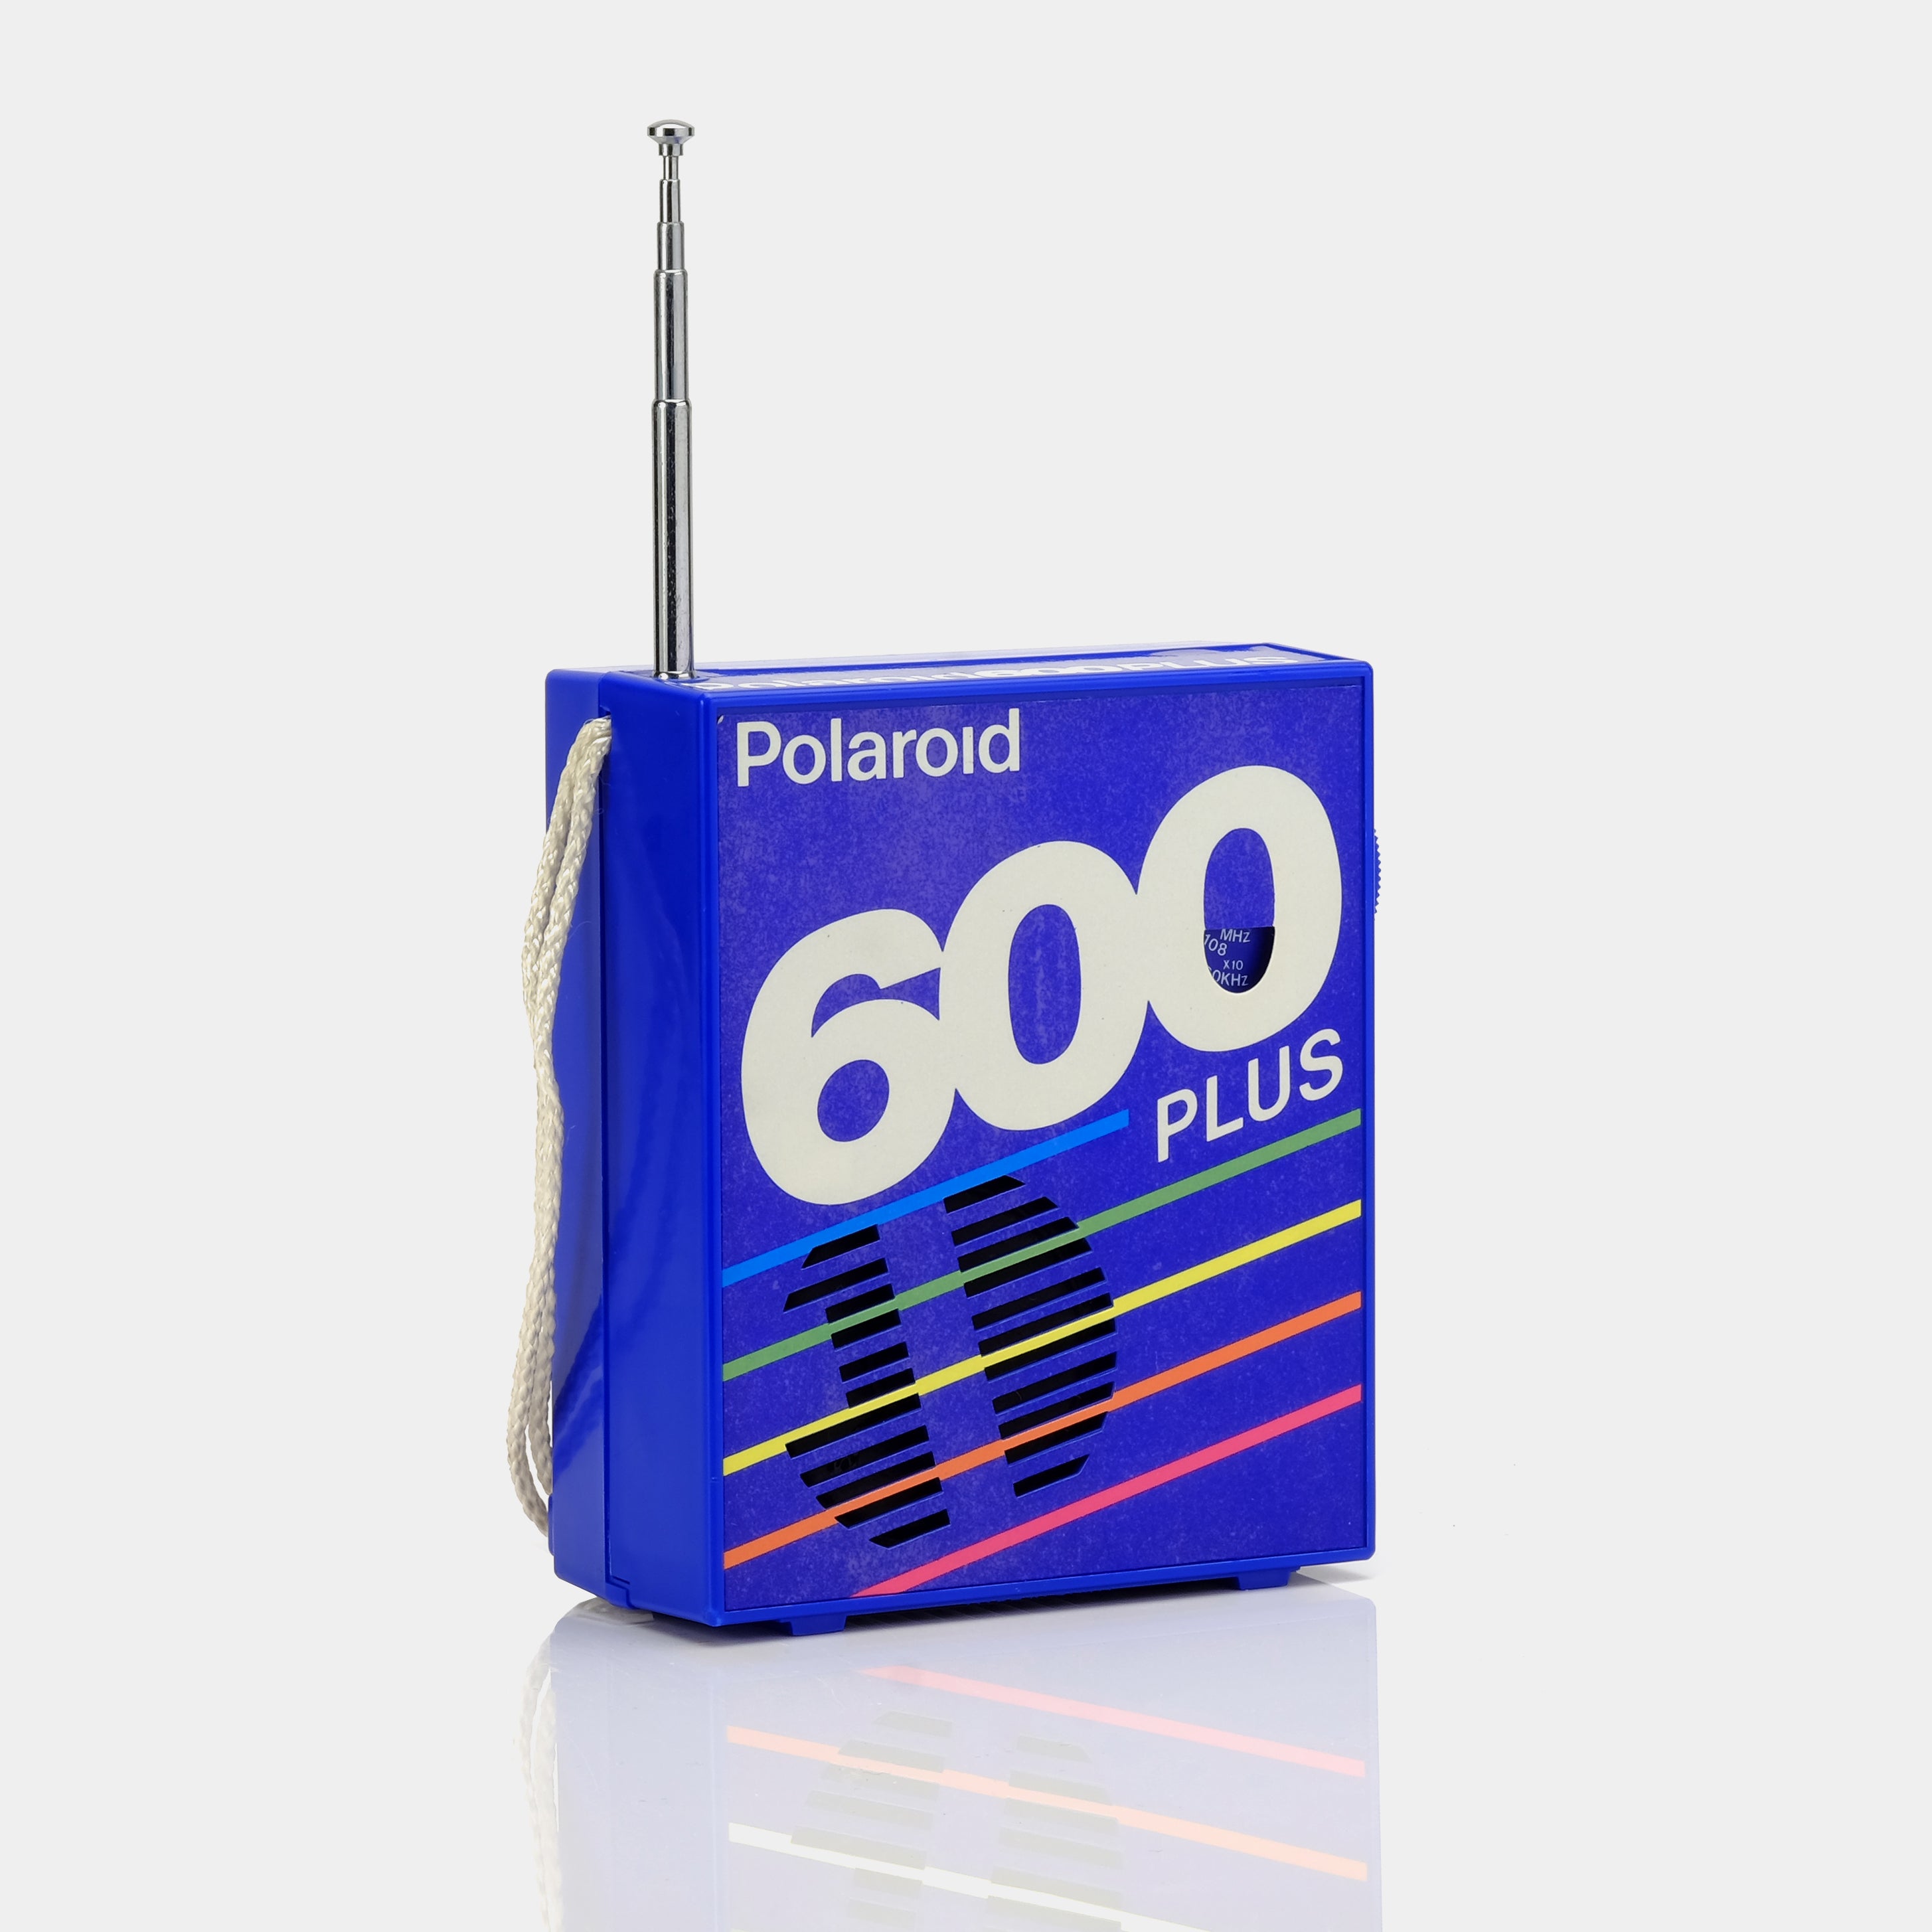 Polaroid 600 Portable Radio